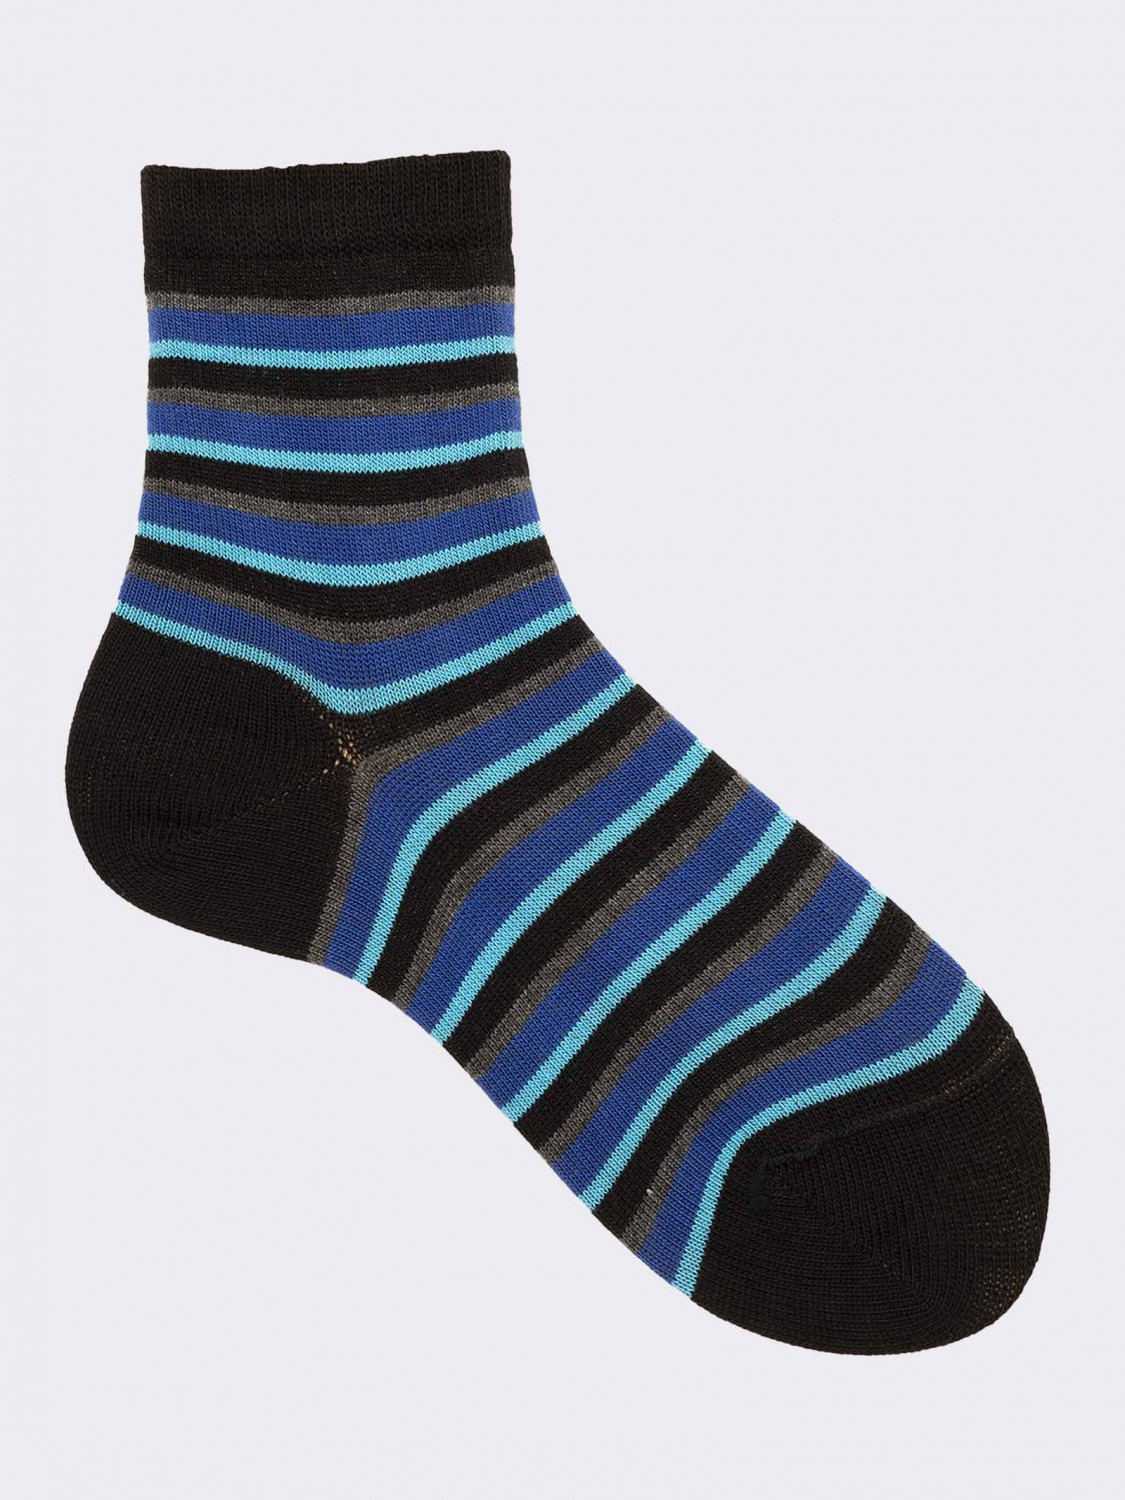 Children's two-colour striped crew socks in warm cotton